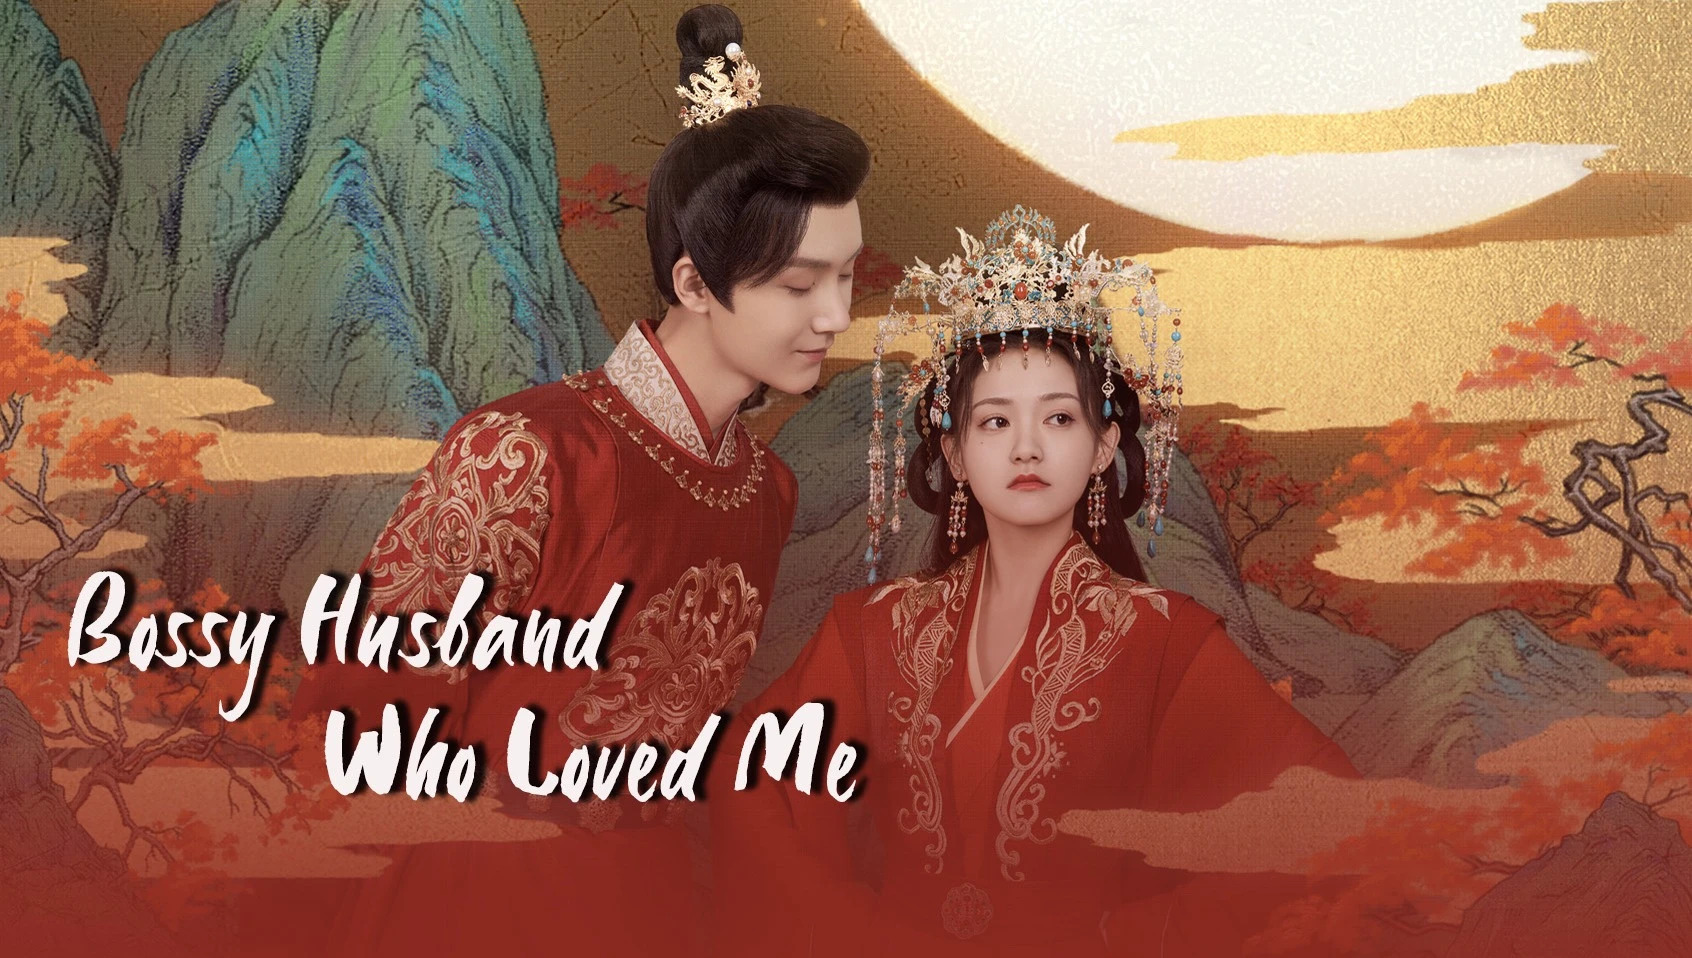 ดูซีรี่ย์จีน Bossy Husband Who Loved Me (2022) สามีข้าเป็นคนคลั่งรัก ซับไทย